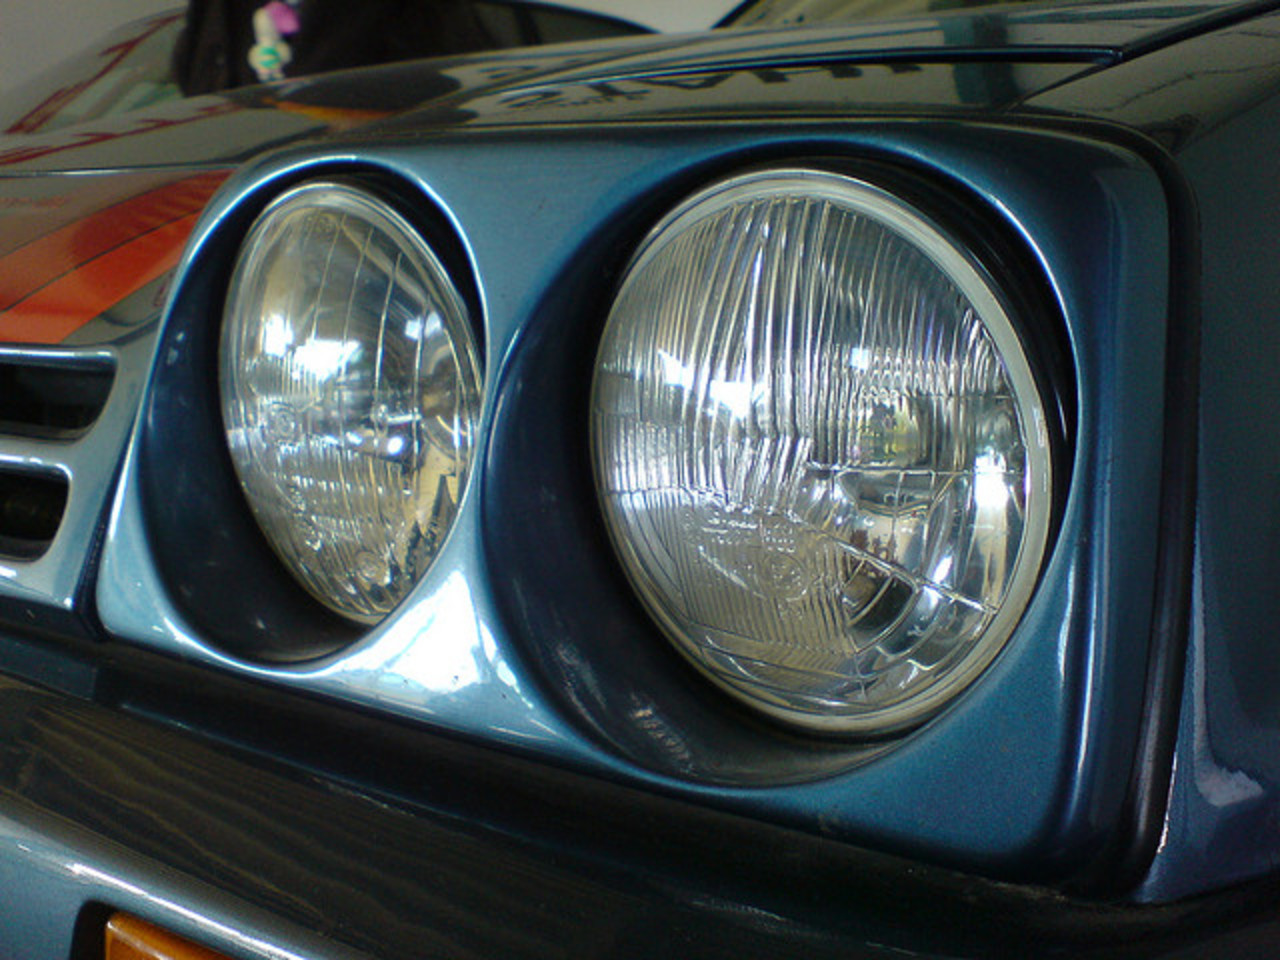 Opel Manta GSI makro | Flickr - Photo Sharing!